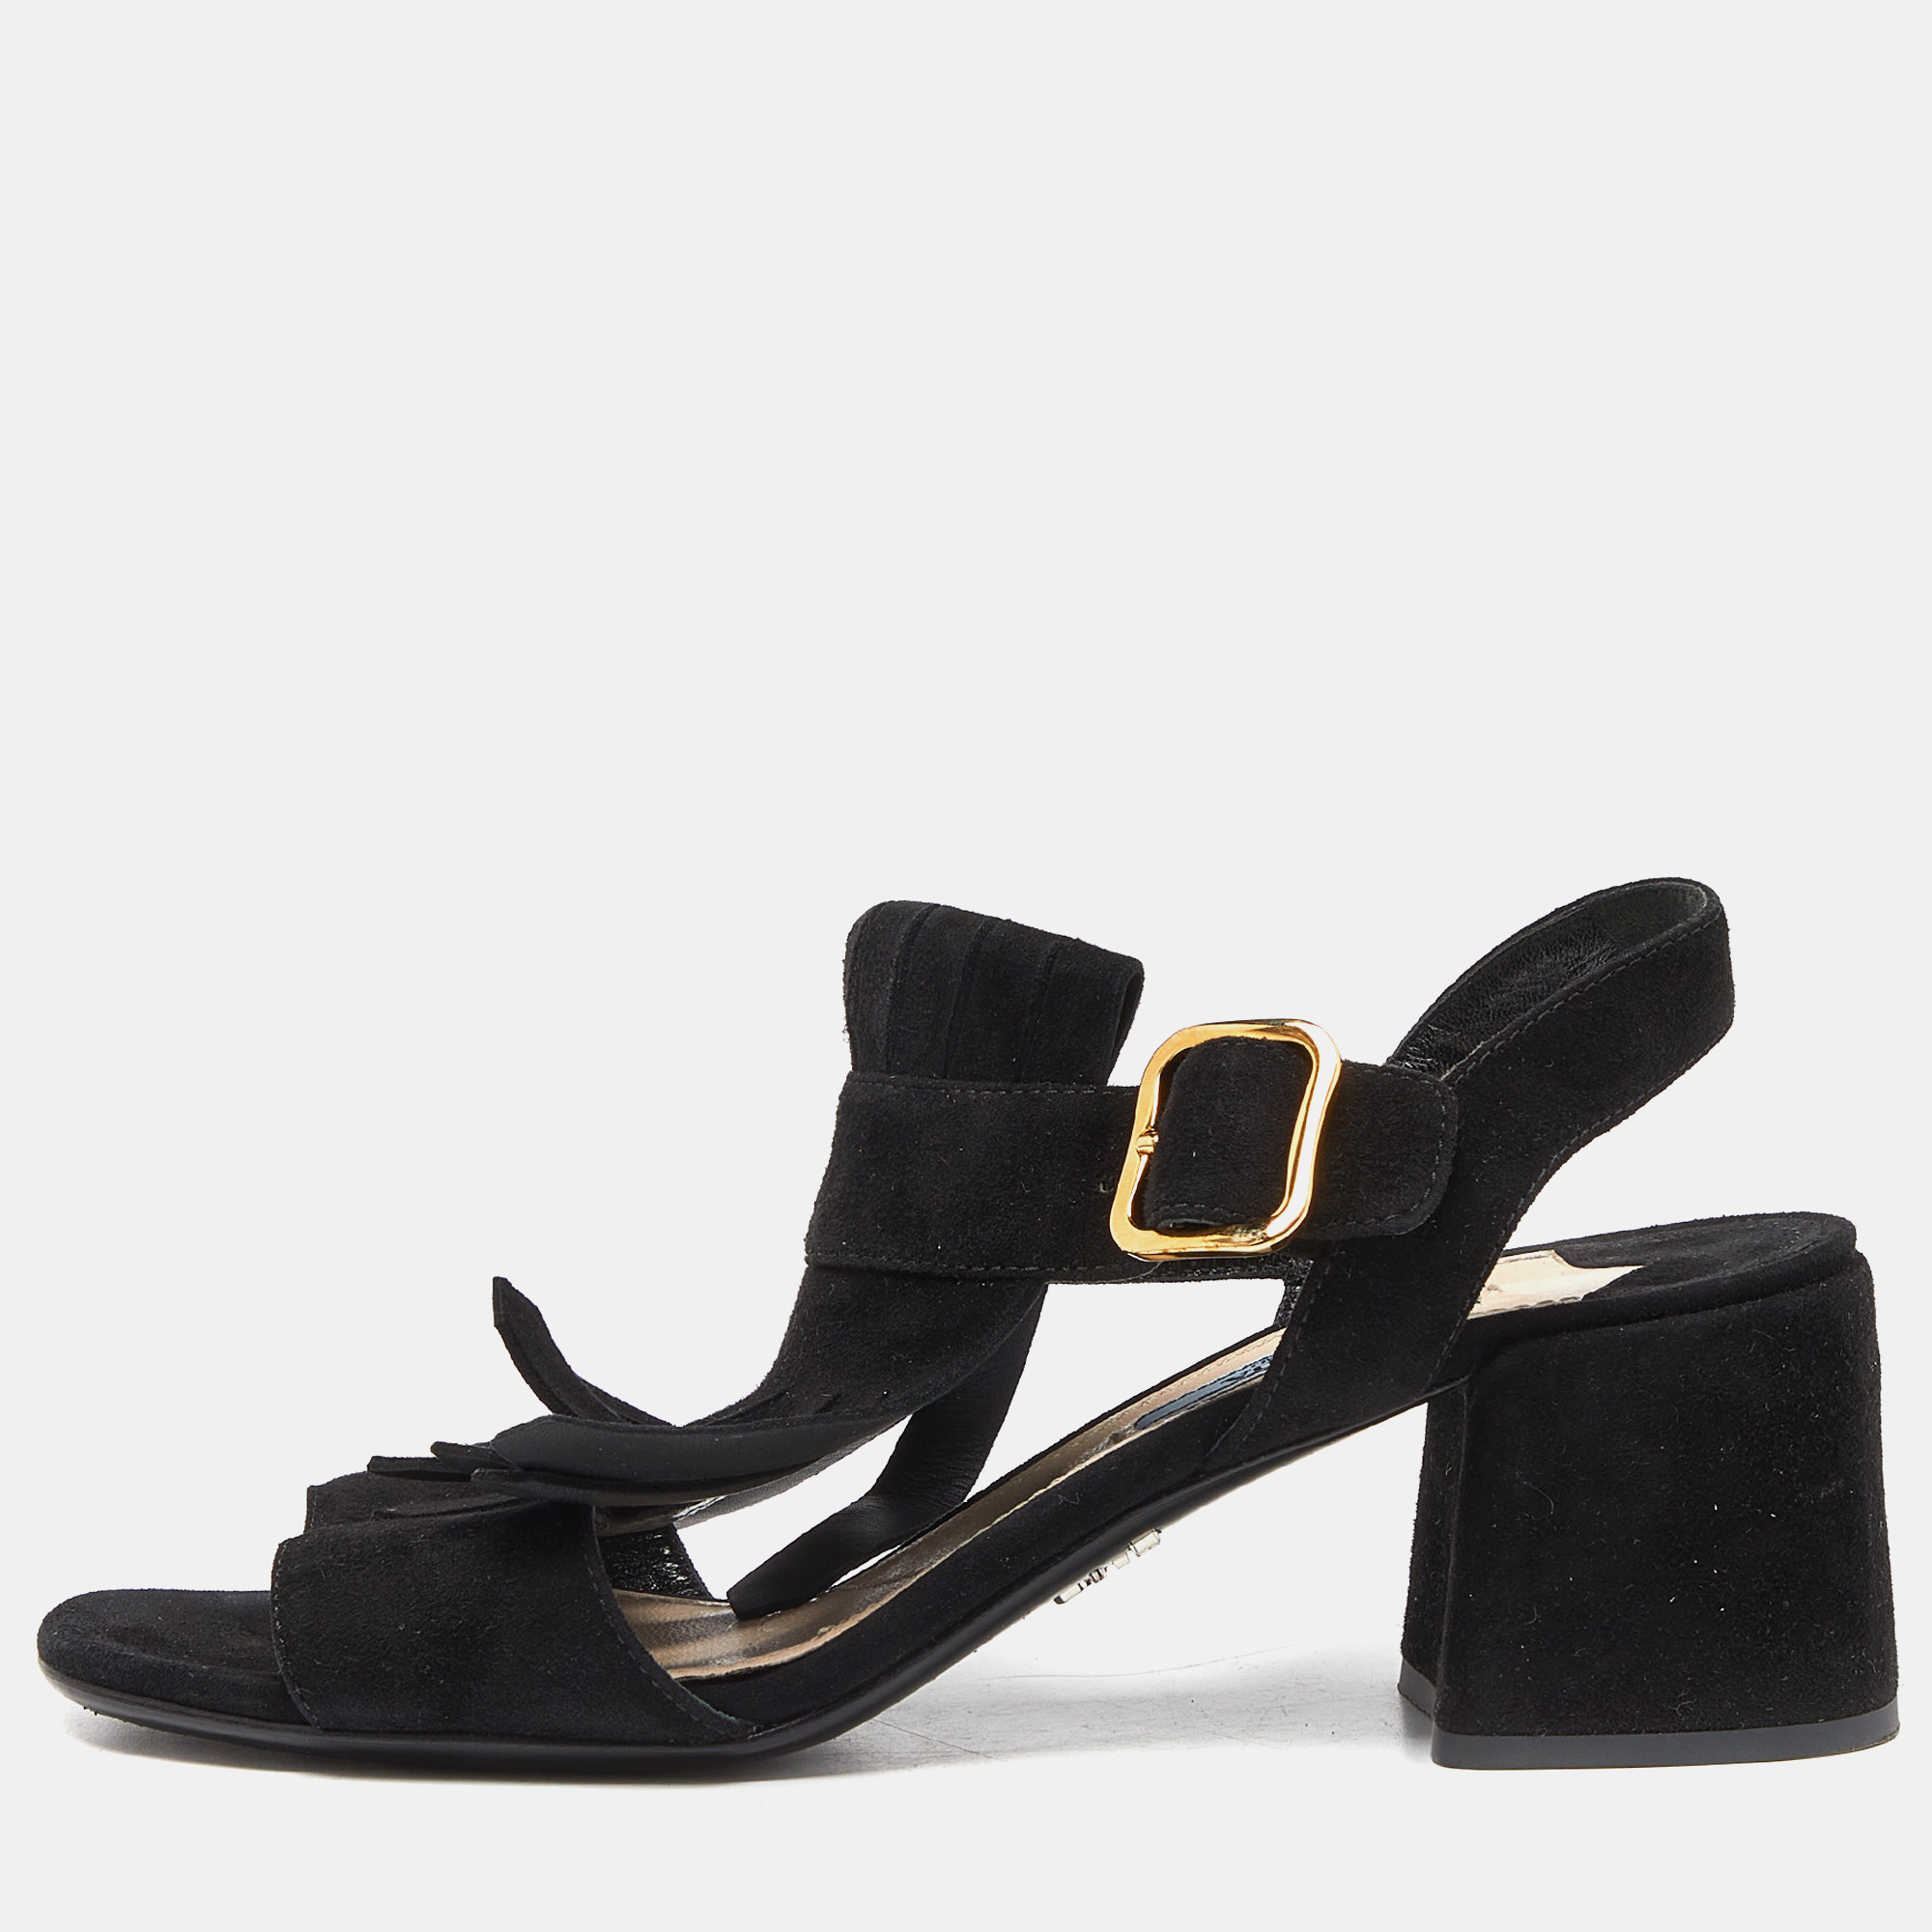 Prada black suede fringe ankle strap sandals size 37